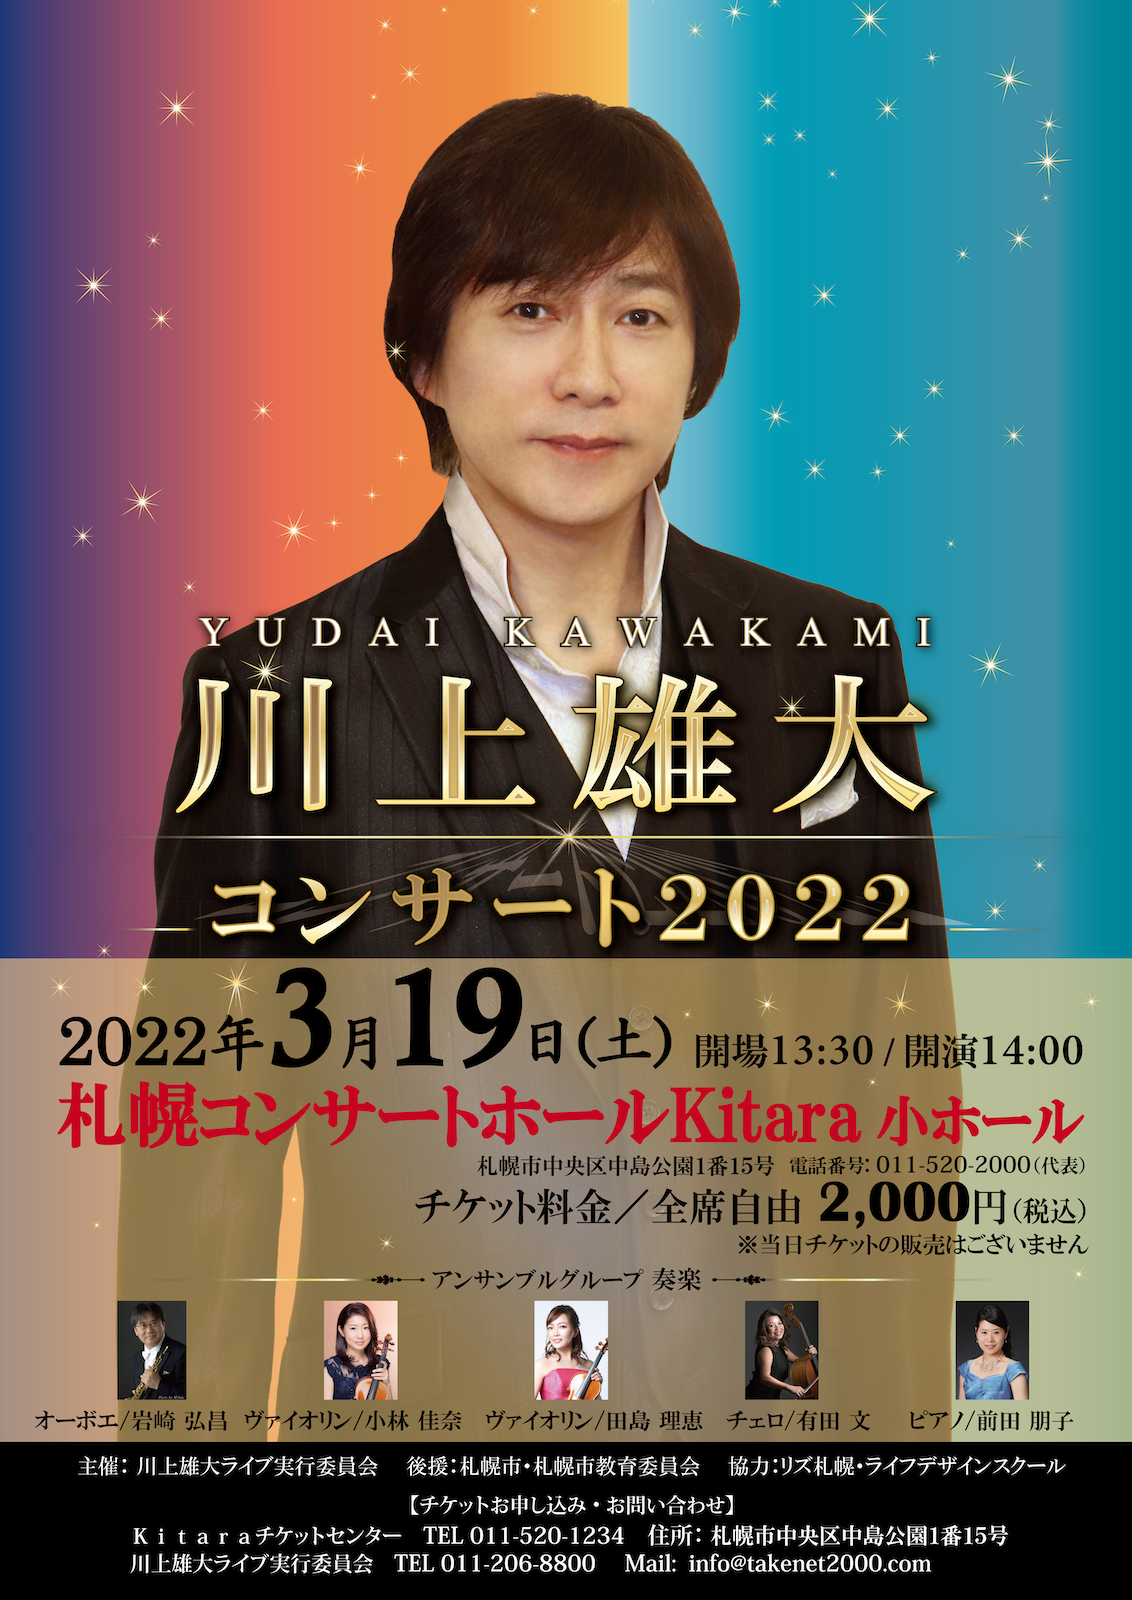 川上雄大 コンサート2022 札幌ｺﾝｻｰﾄﾎｰﾙ Kitara 小ホール イメージ画像